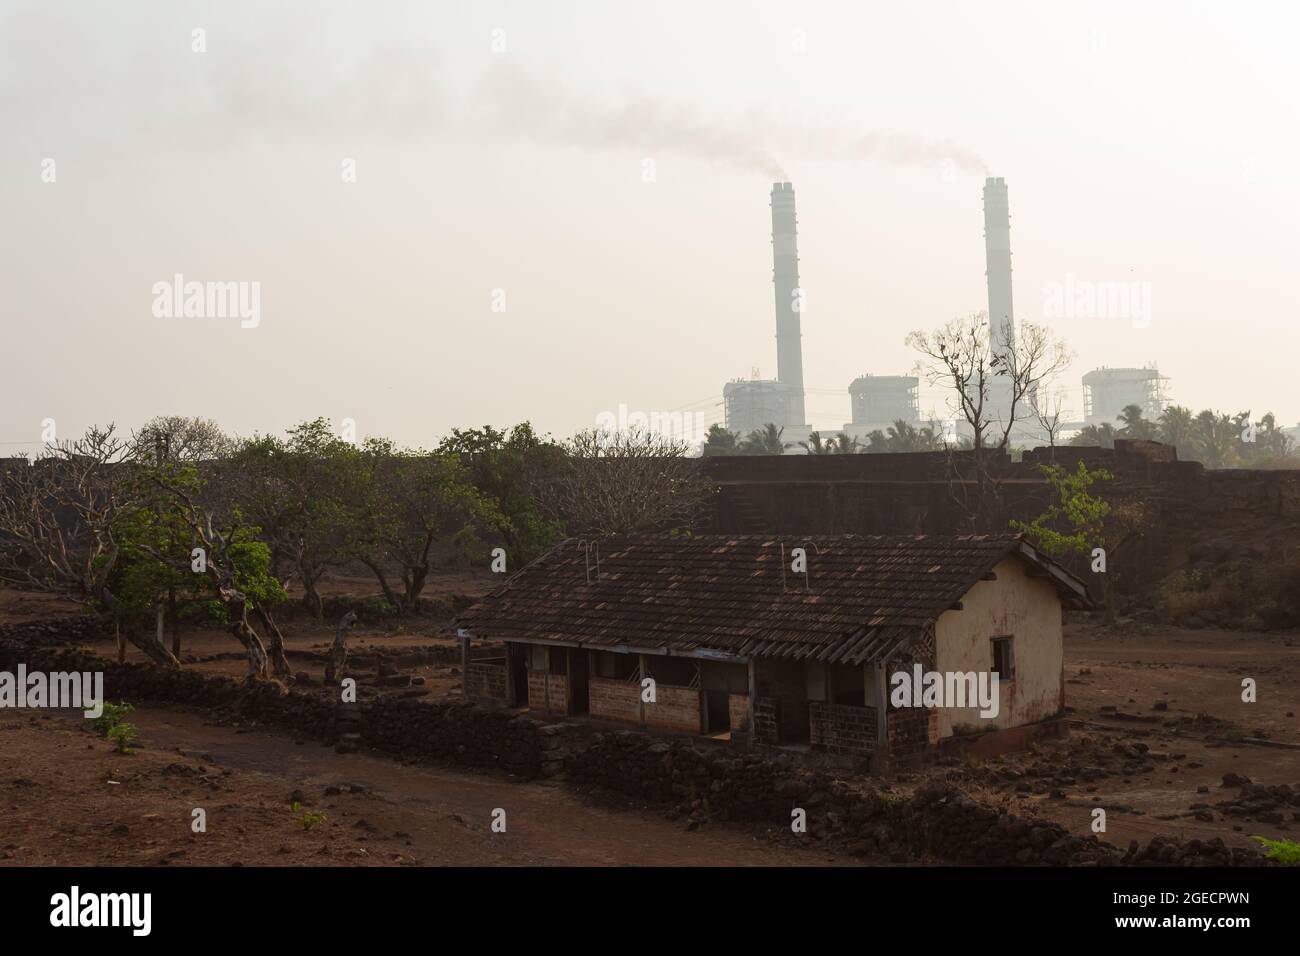 le fotografie che mostrano l'inquinamento atmosferico di fabbrica, camino di fumo. inquinamento industriale. India. Foto Stock